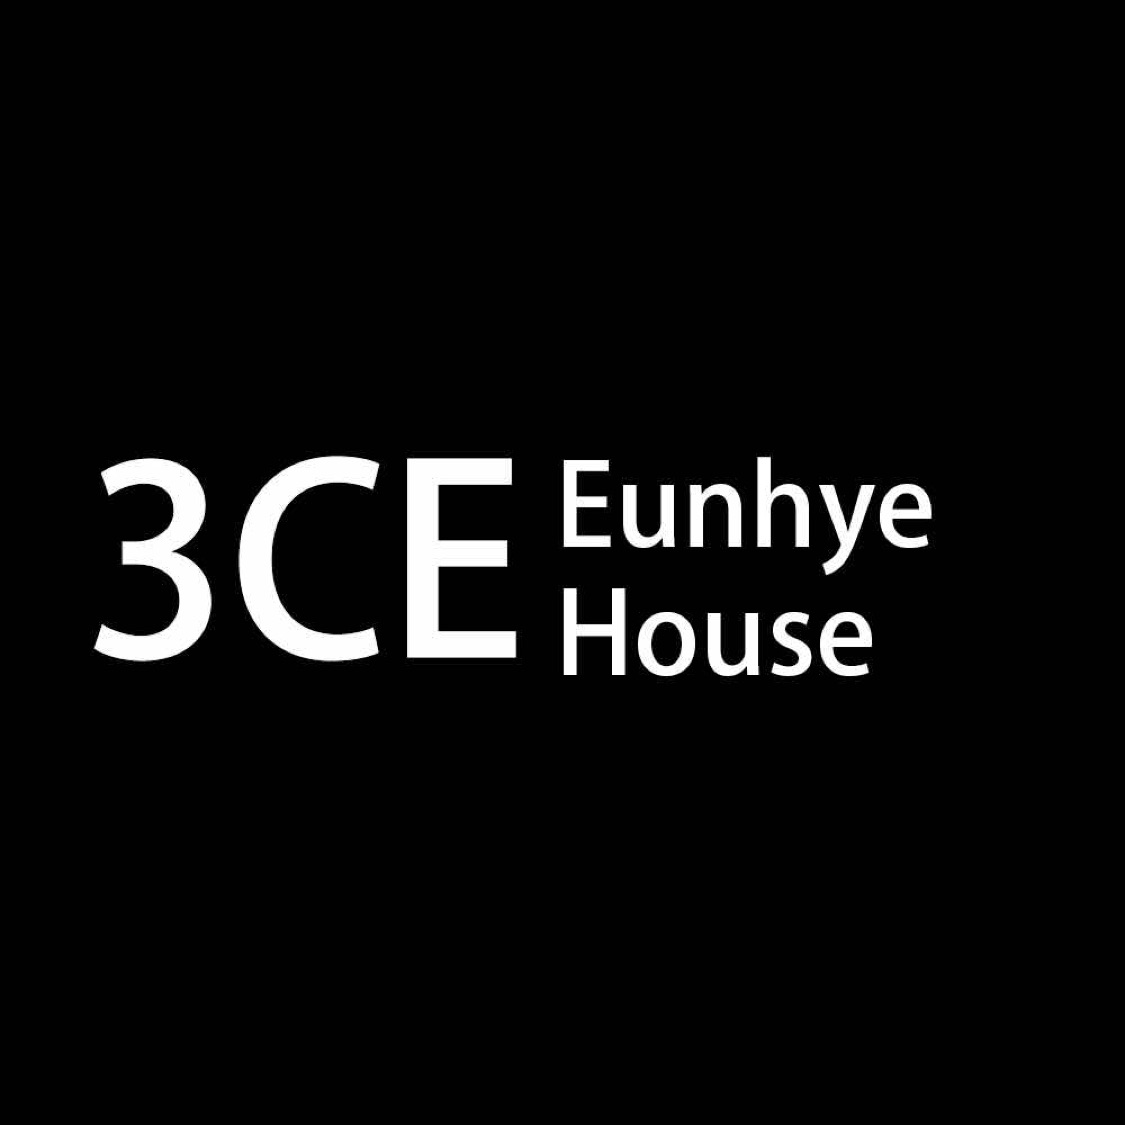 3CE EUNHYE HOUSE